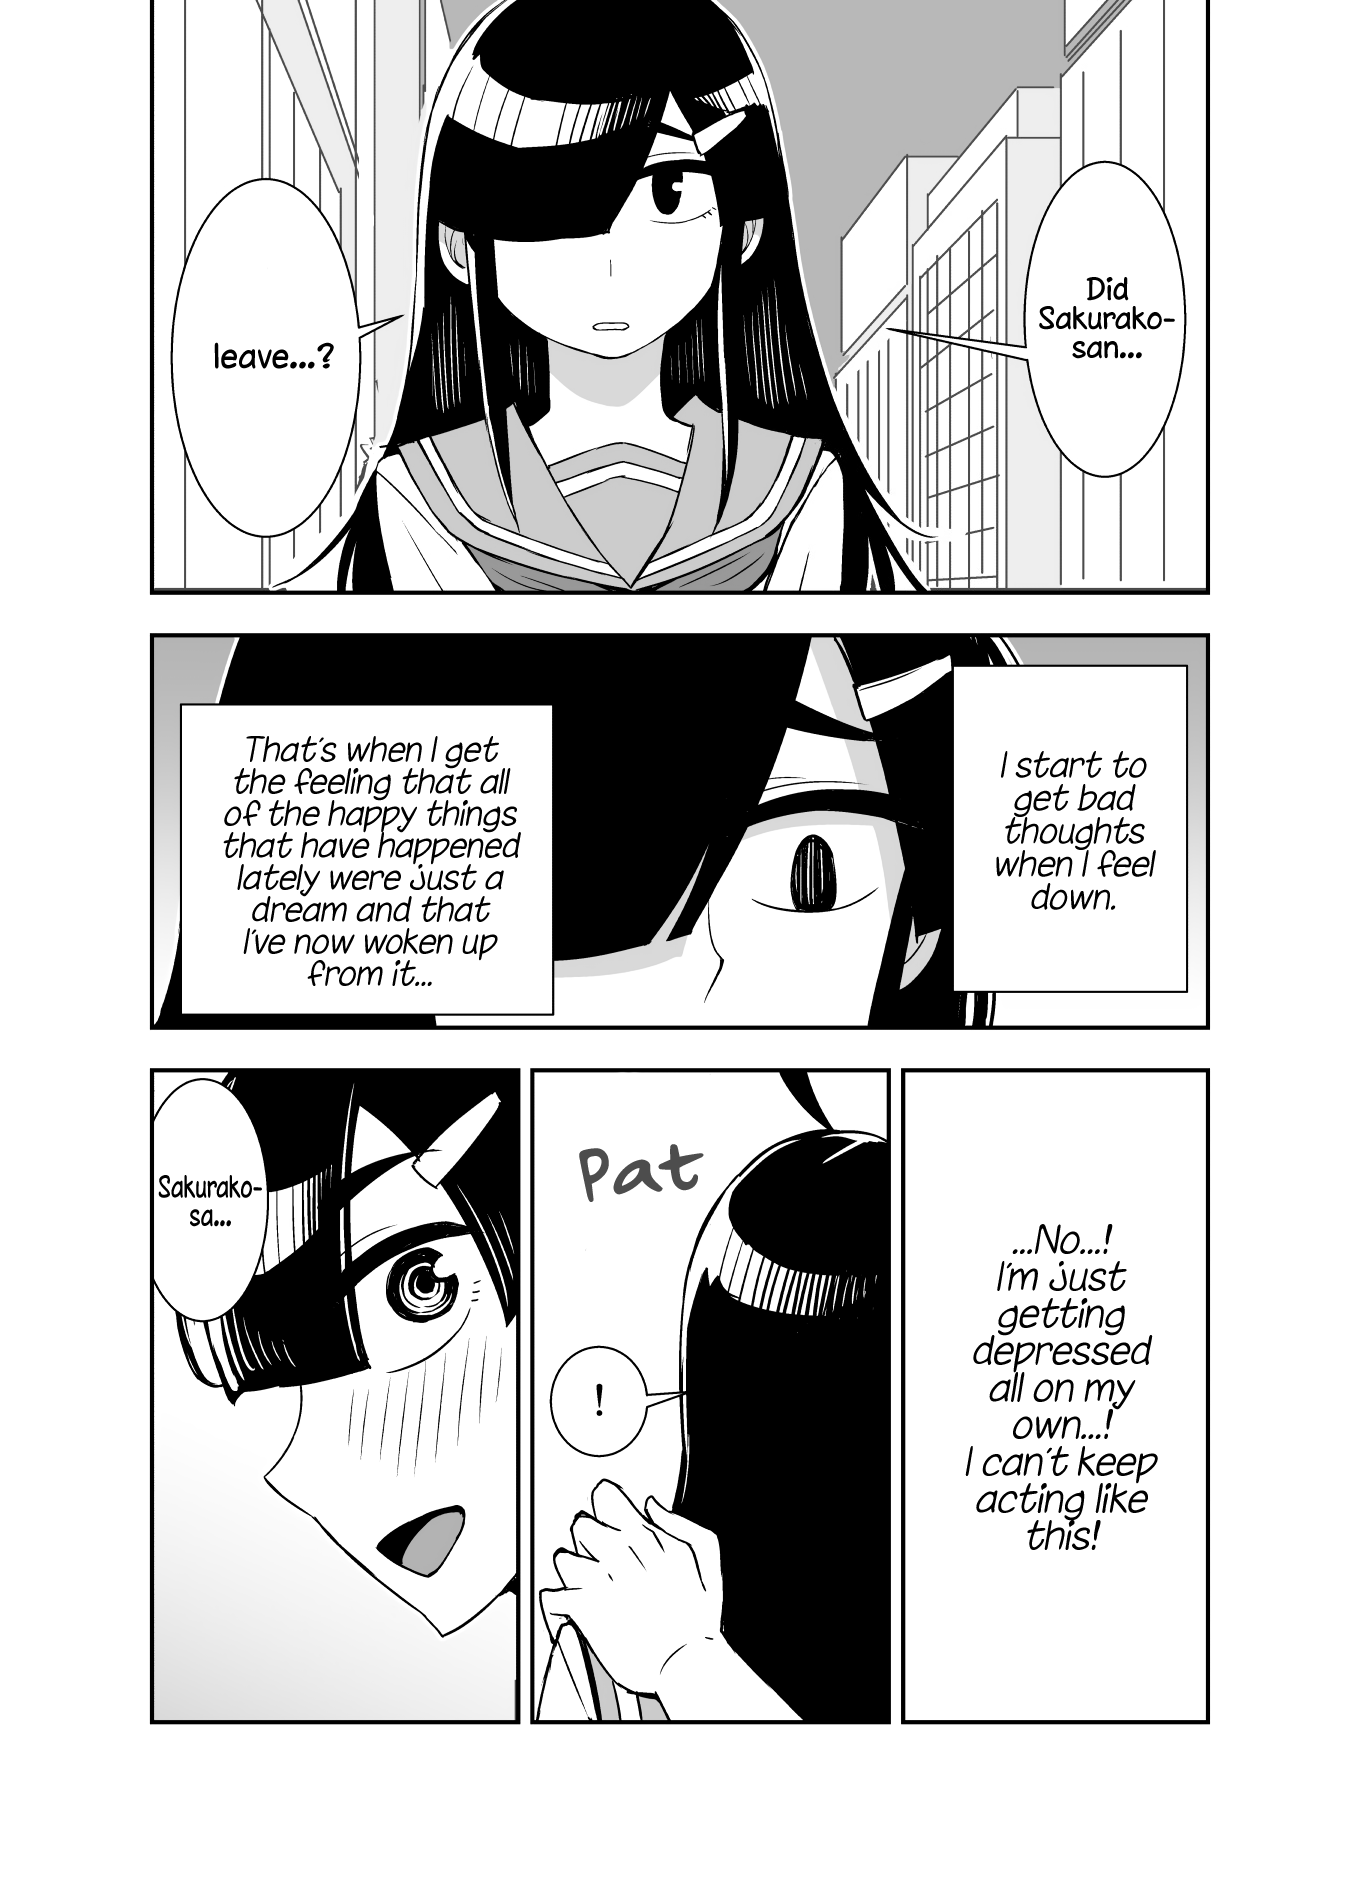 Tadokoro-San - Page 1